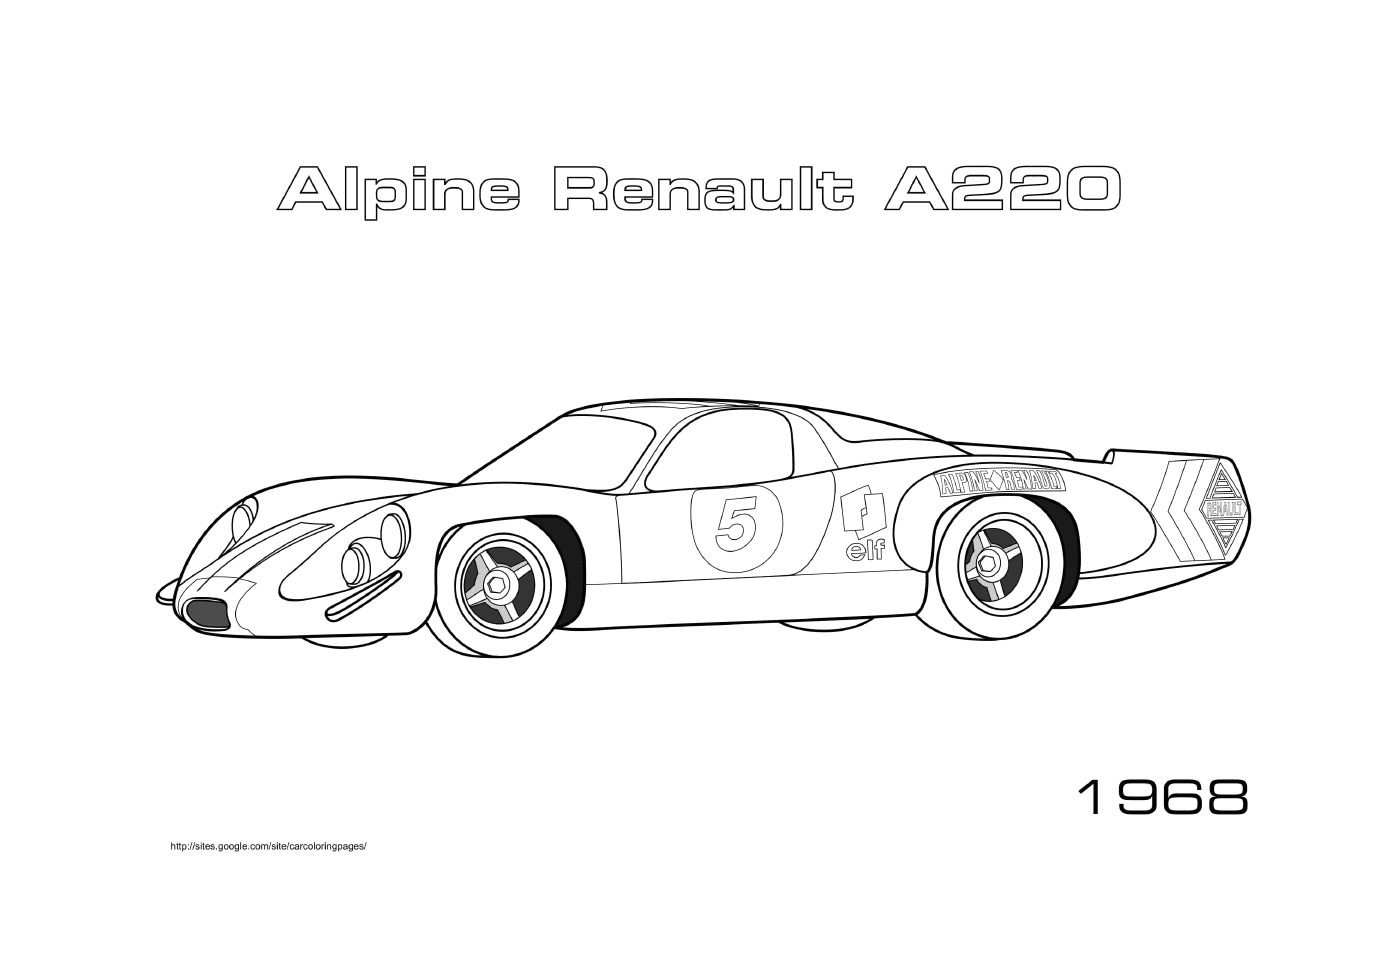  Alpine Renault A220 von 1968 